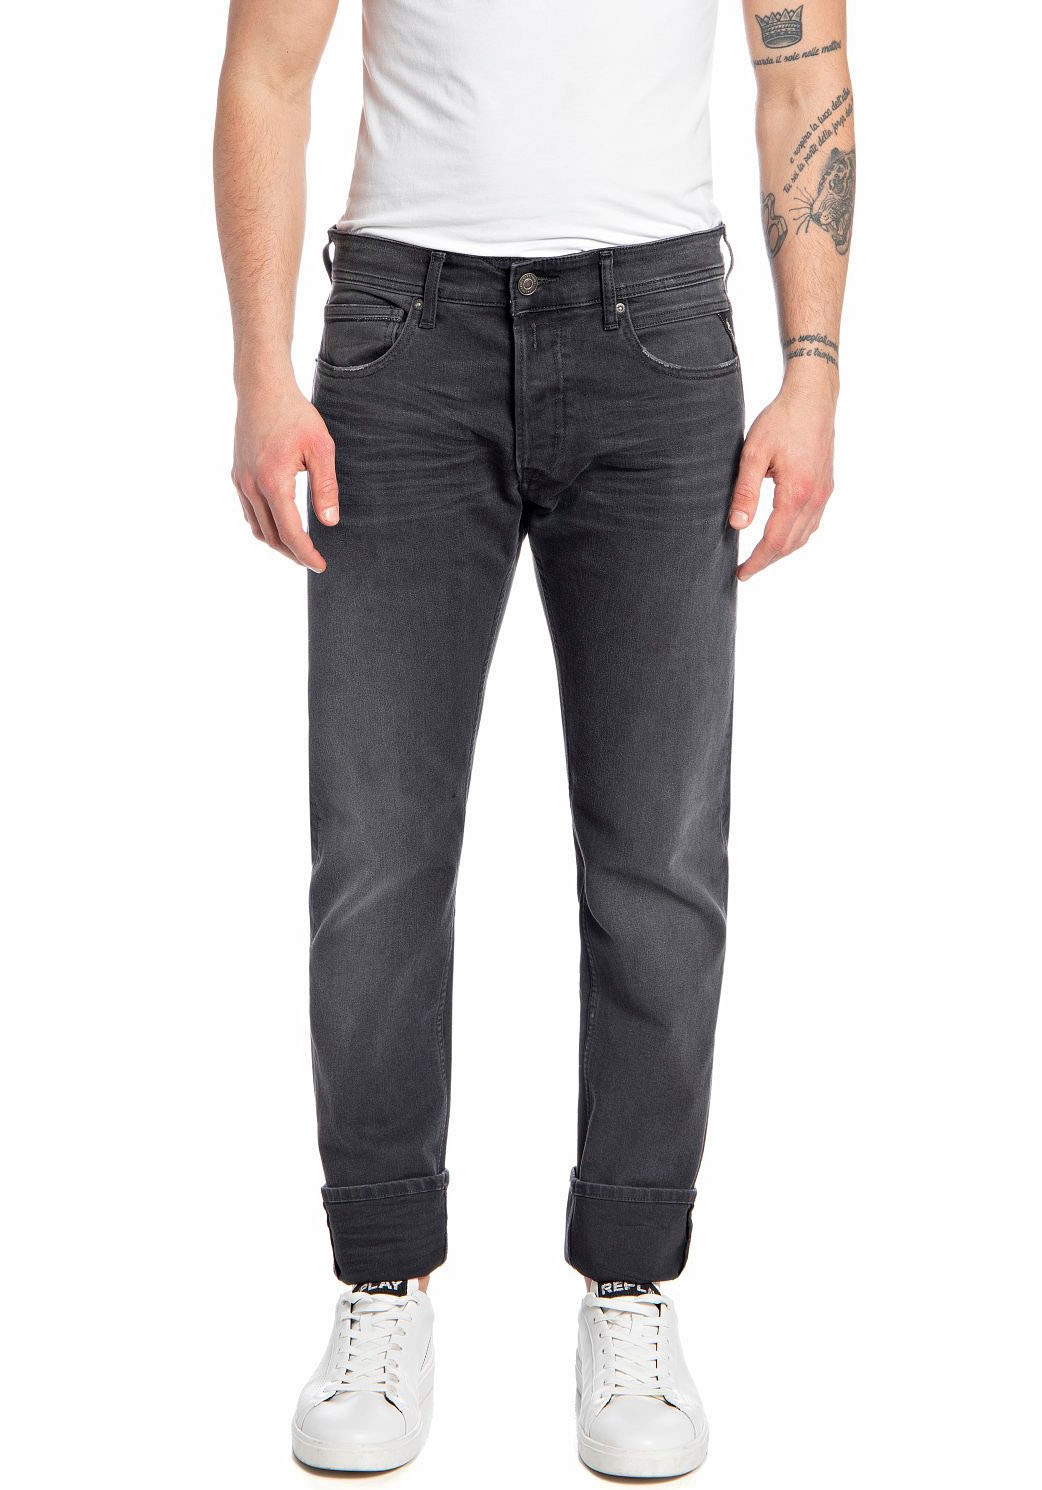 Straight-Jeans »GROVER«, in vielen verschiedenen Waschungen, mit Stretch